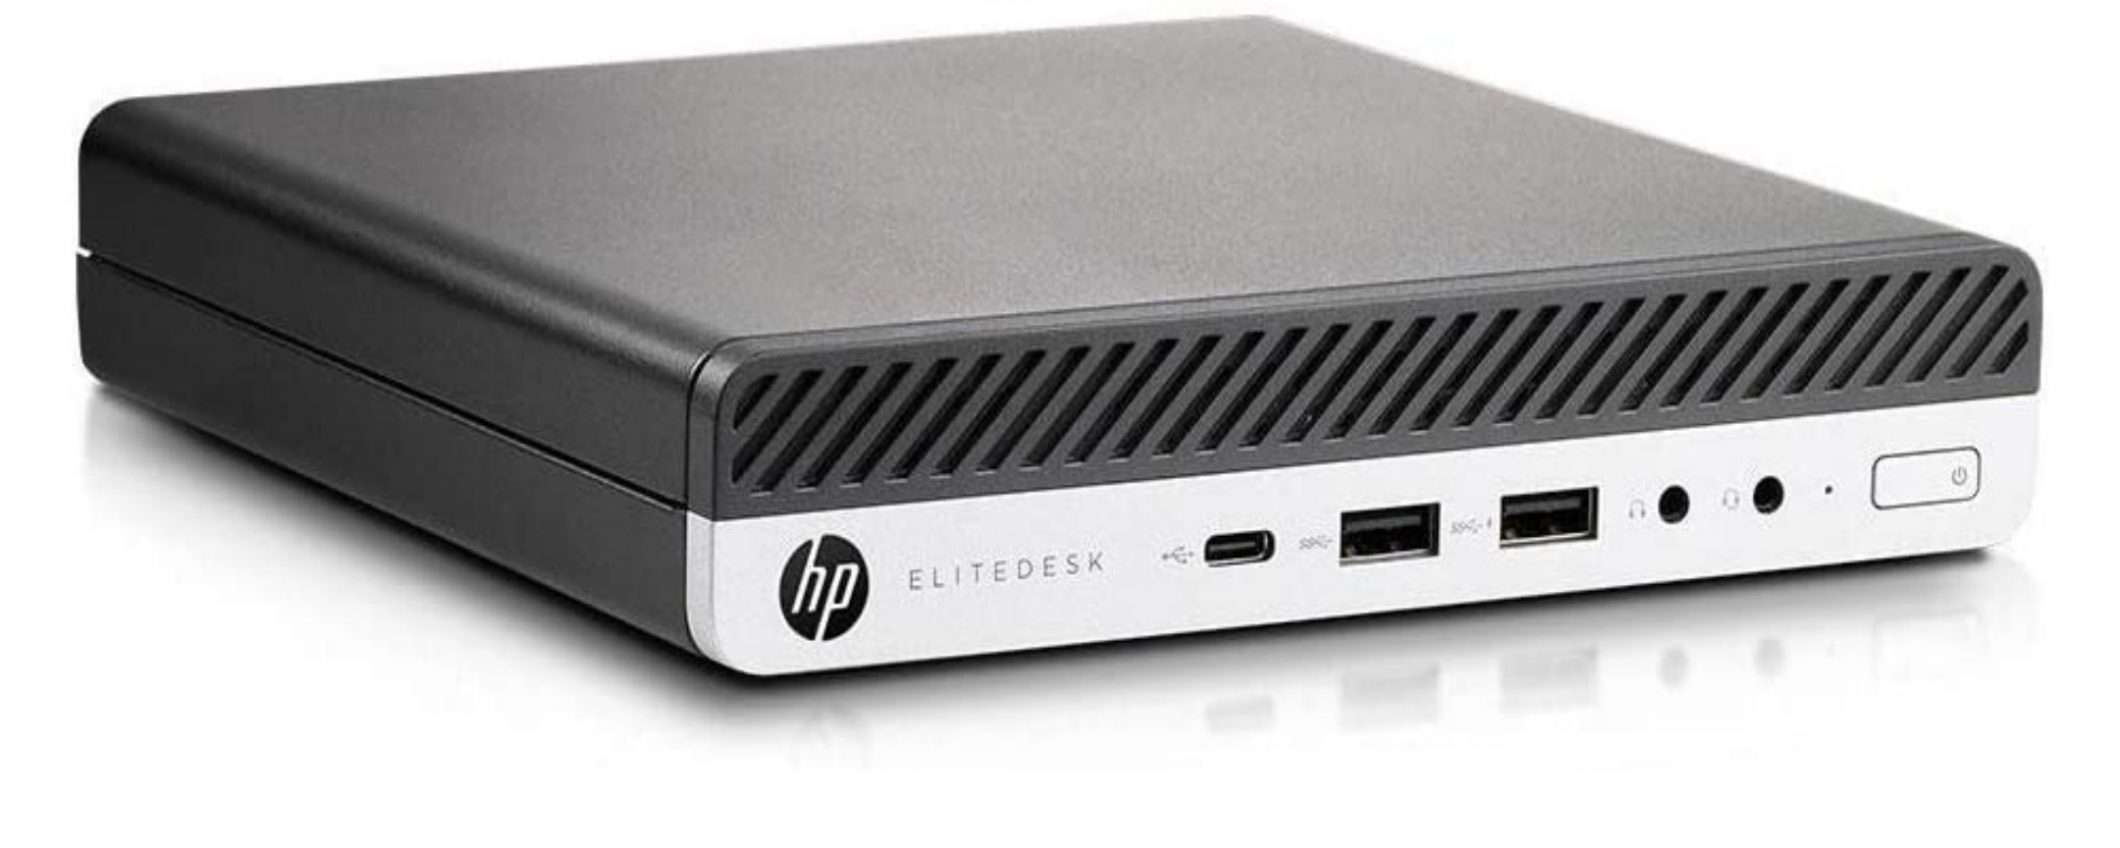 Mini PC professionale ad un prezzo incredibile: HP EliteDesk 800 G3